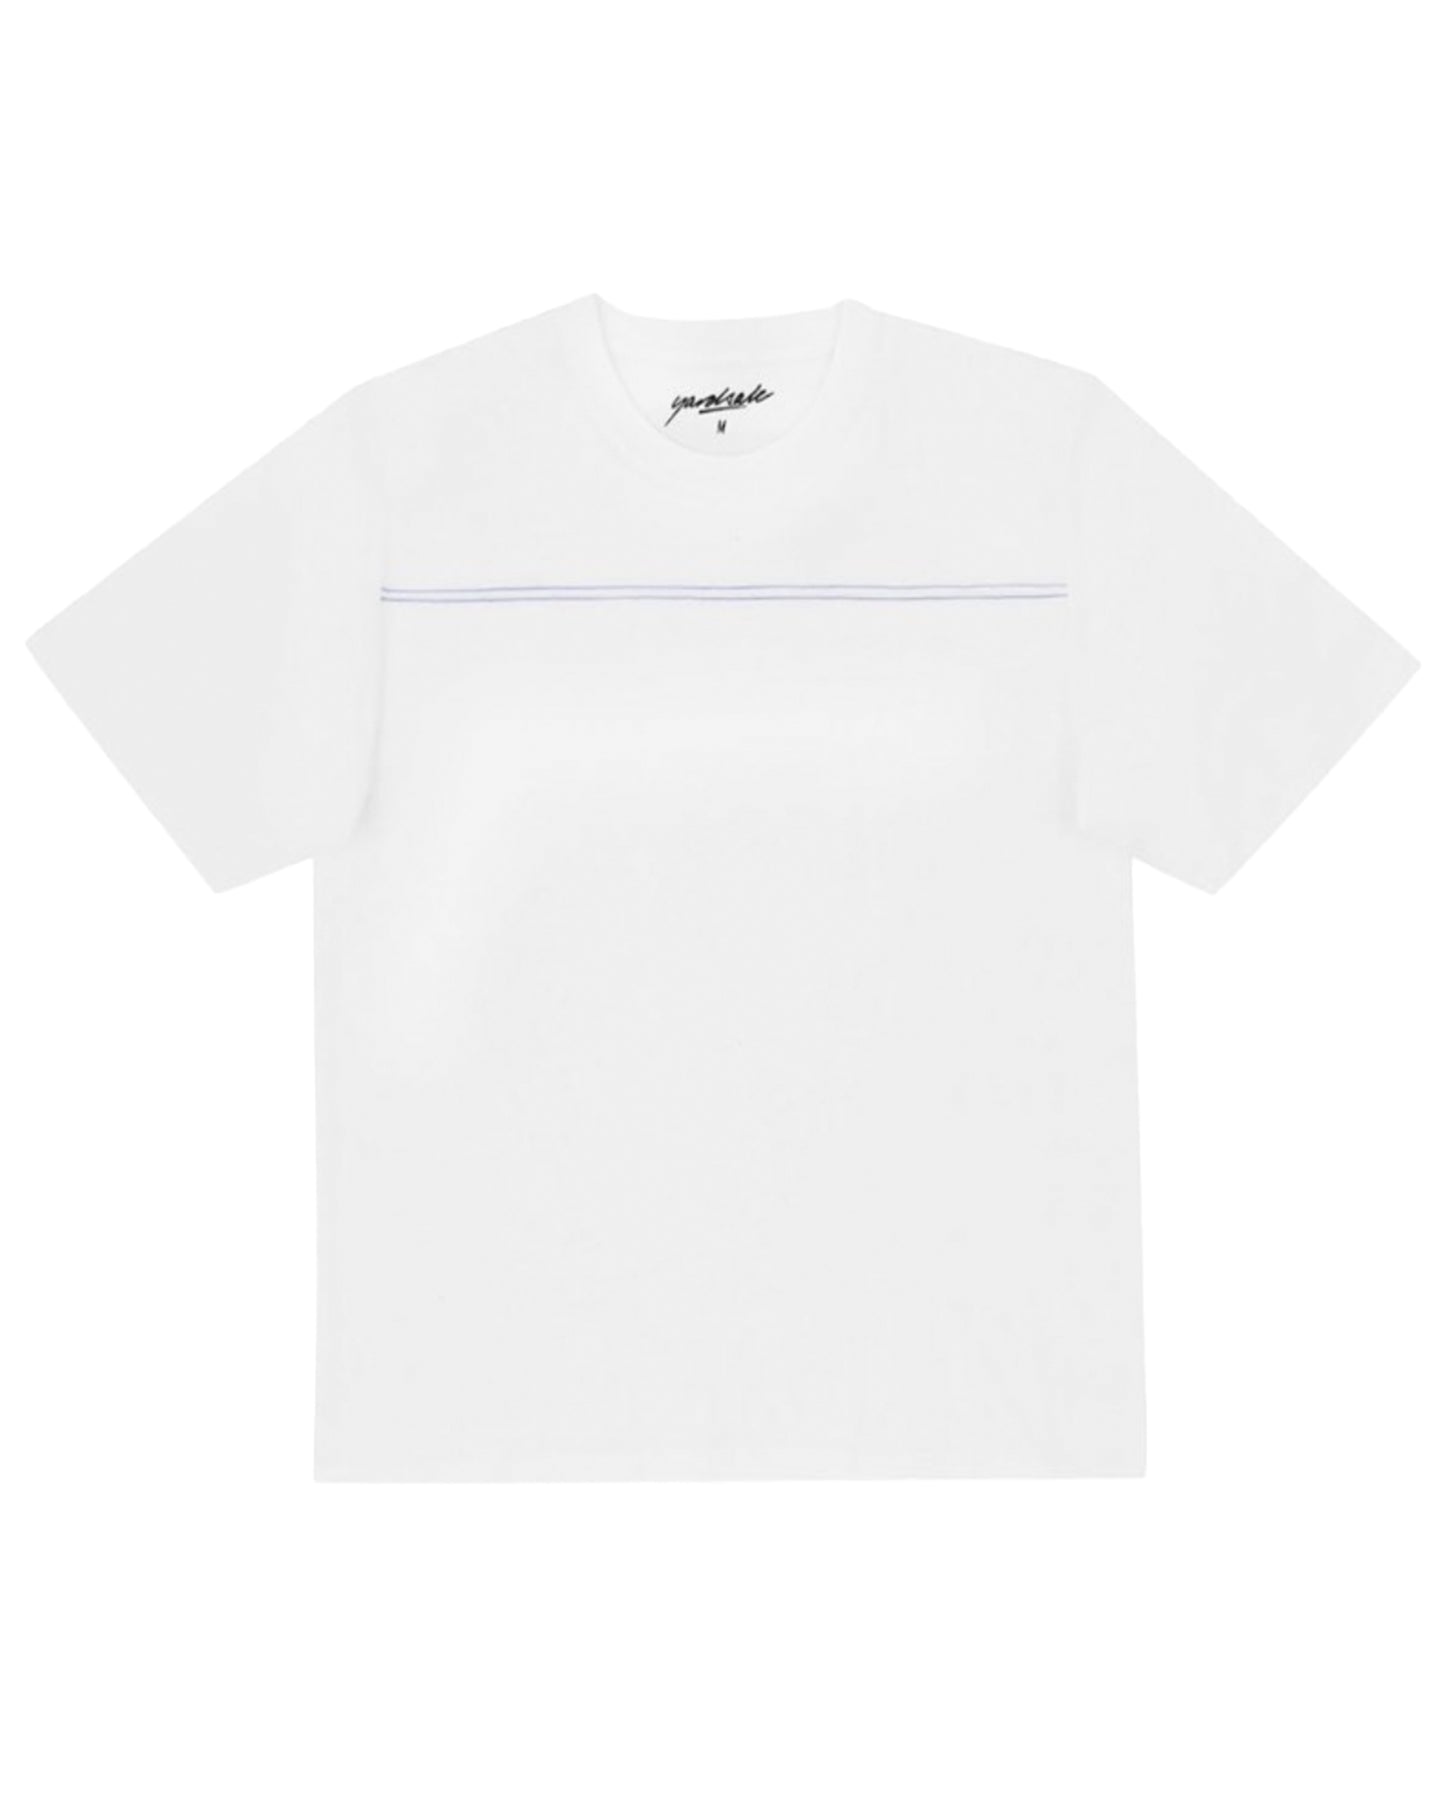 ヤードセール/SPRAY TSHIRT/Tシャツ/White